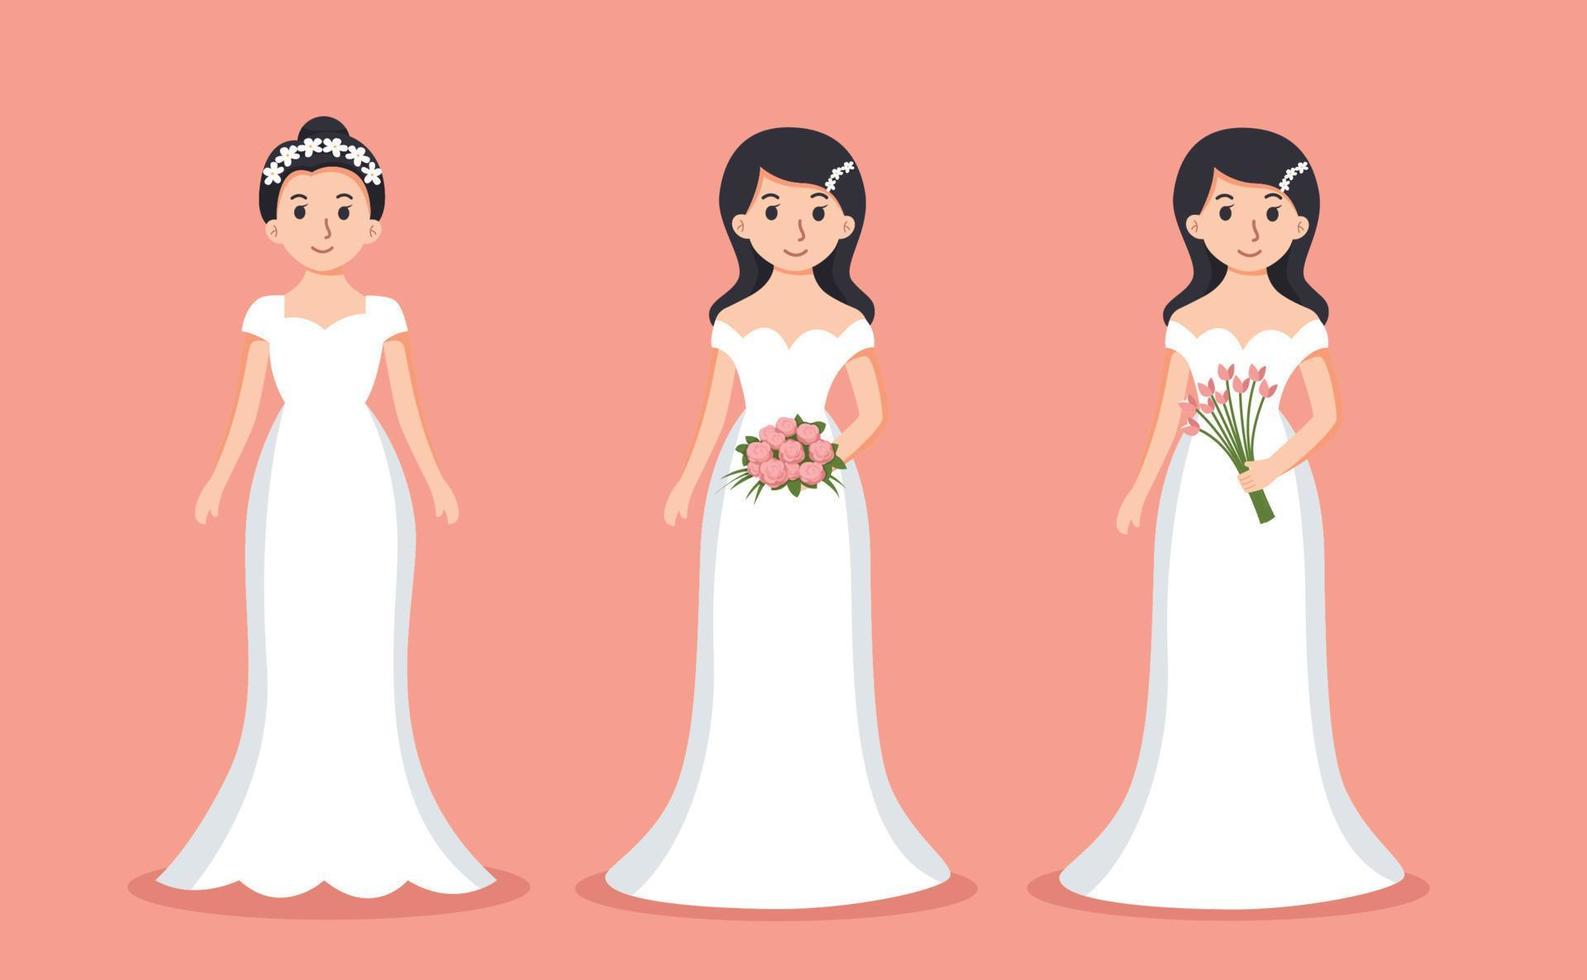 conjunto de novia Boda dibujos animados vector ilustración